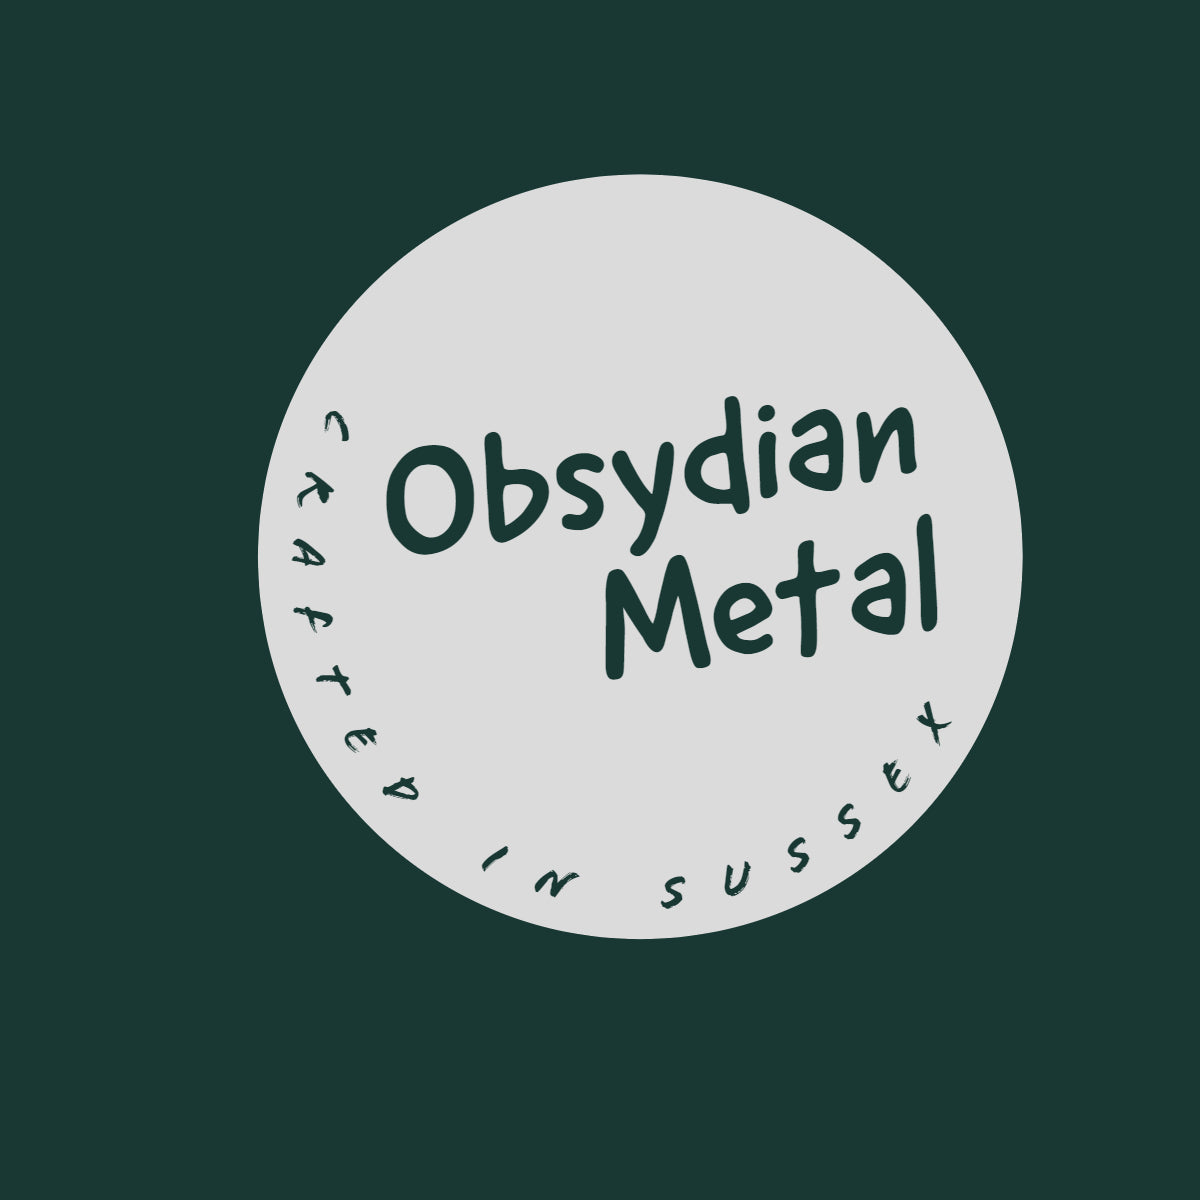 Obsydian Metal Products Ltd